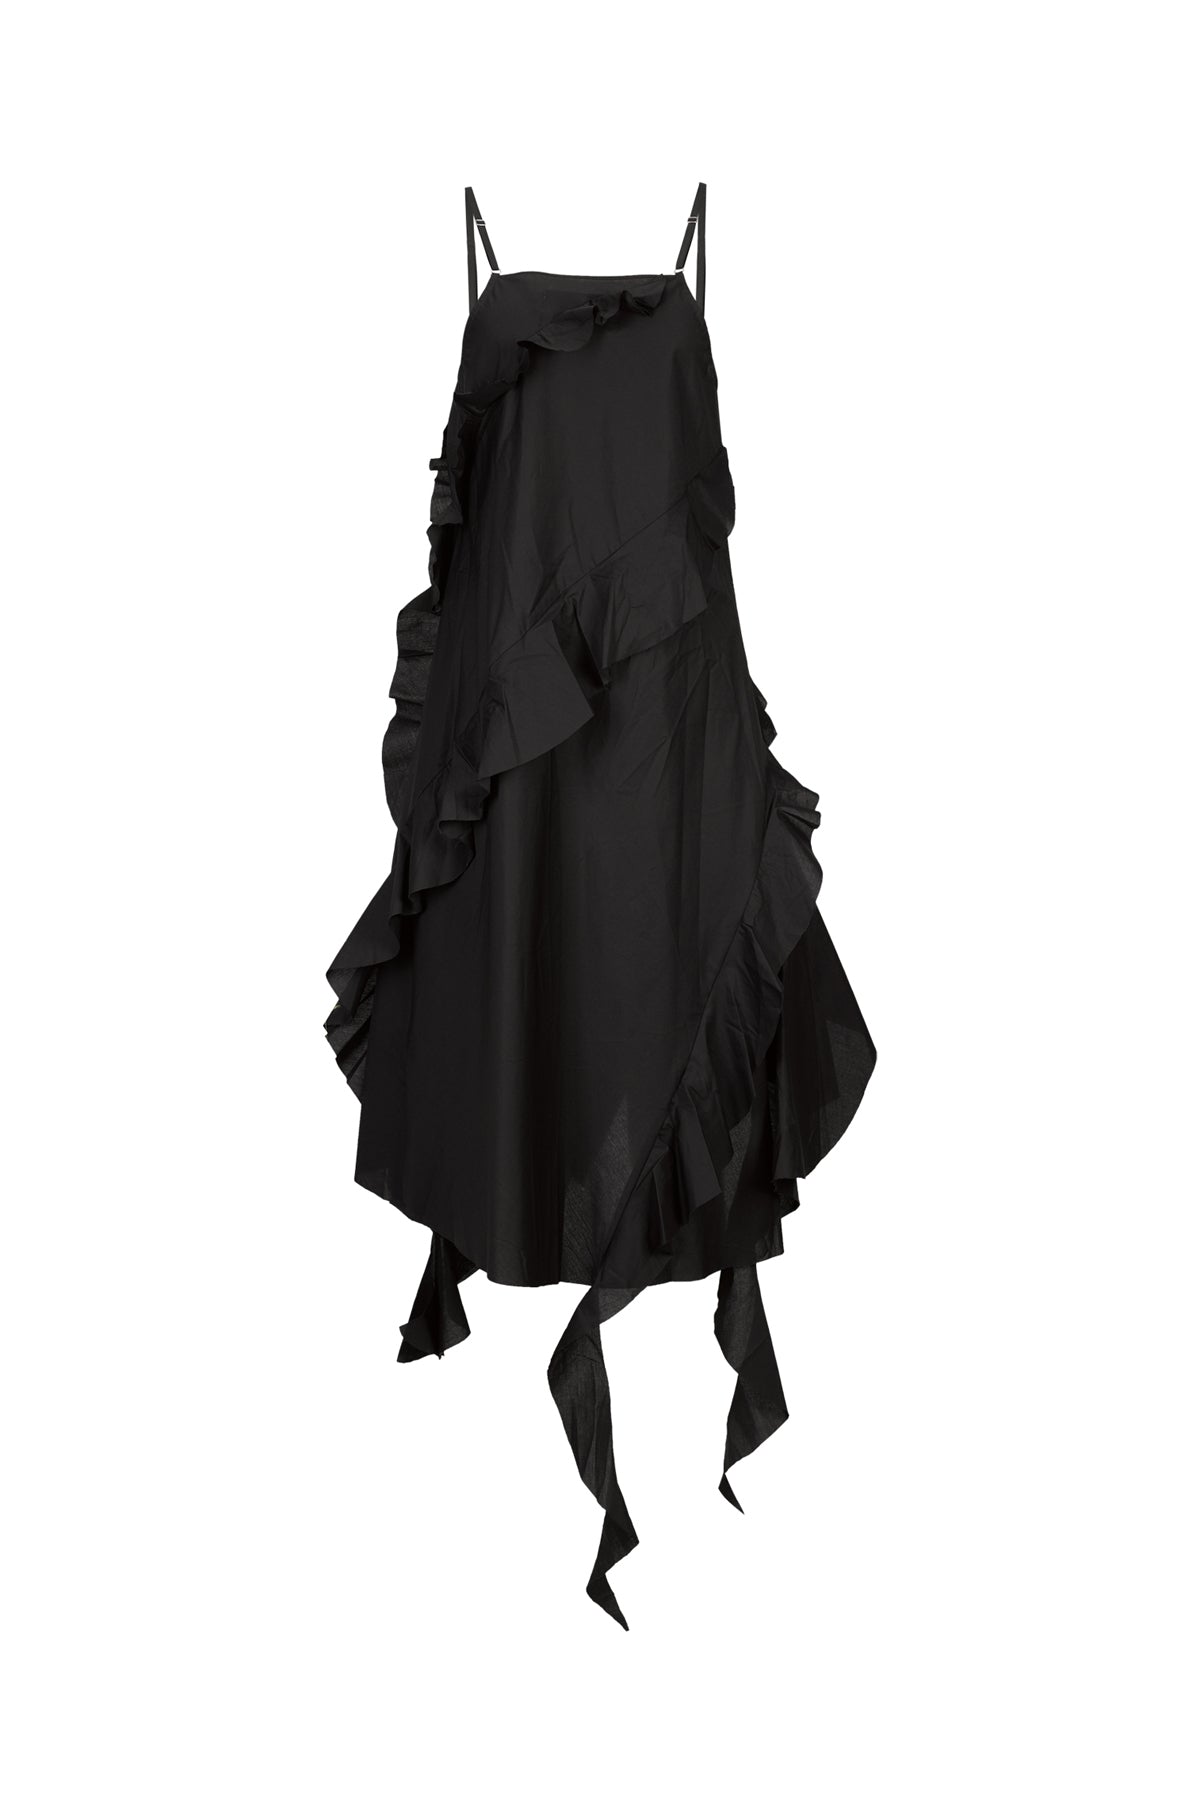 BLACK STRAP DRESS WITH ASYMMETRIC CASCADING FRILLS marques almeida